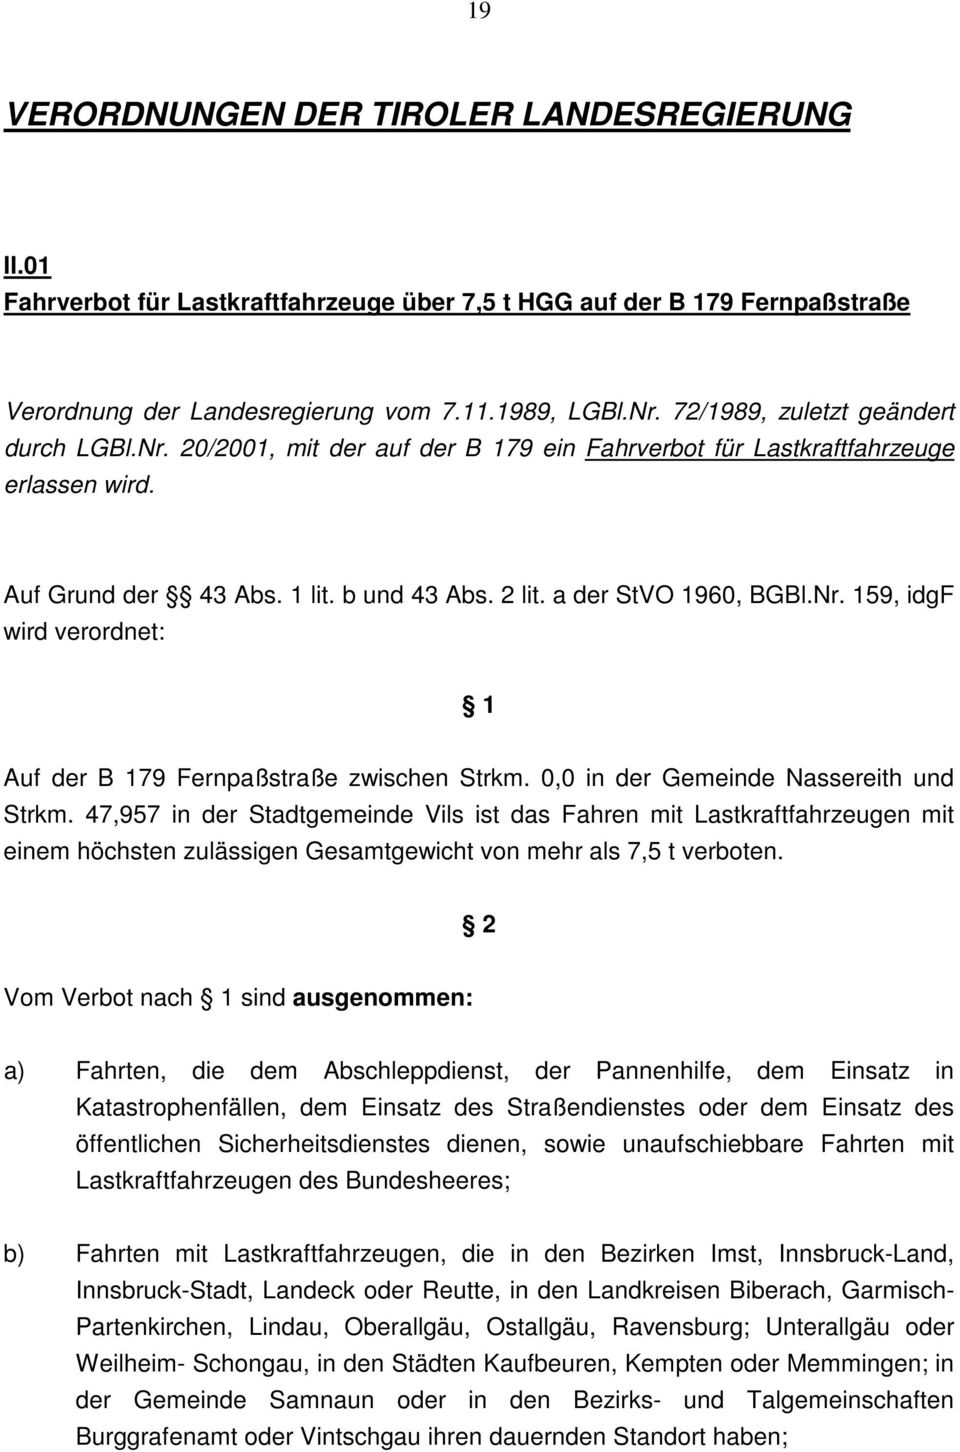 0,0 in der Gemeinde Nassereith und Strkm. 47,957 in der Stadtgemeinde Vils ist das Fahren mit Lastkraftfahrzeugen mit einem höchsten zulässigen Gesamtgewicht von mehr als 7,5 t verboten.